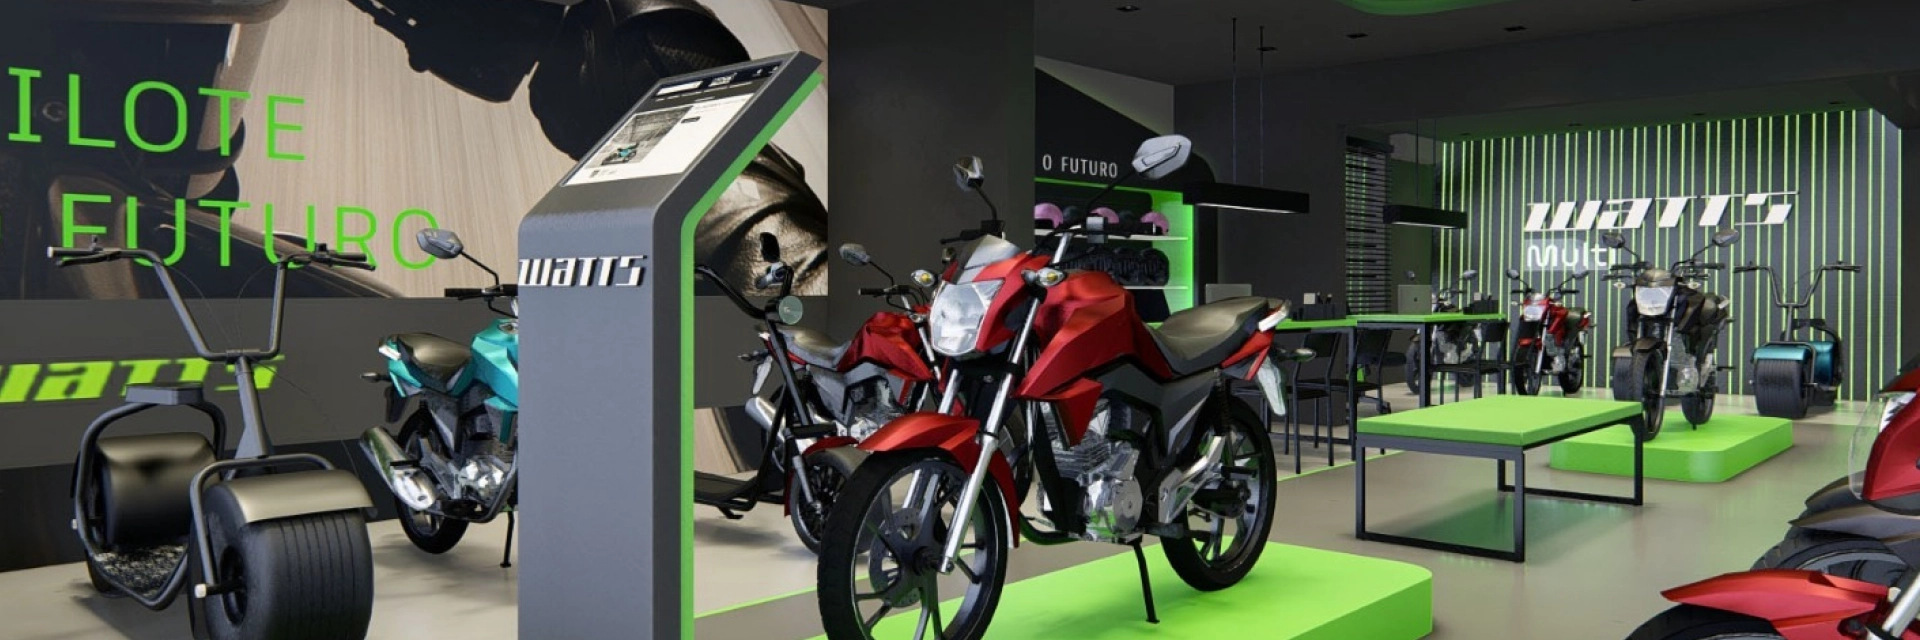 Imagem de uma concessionária Watts com motos elétricas em exibição